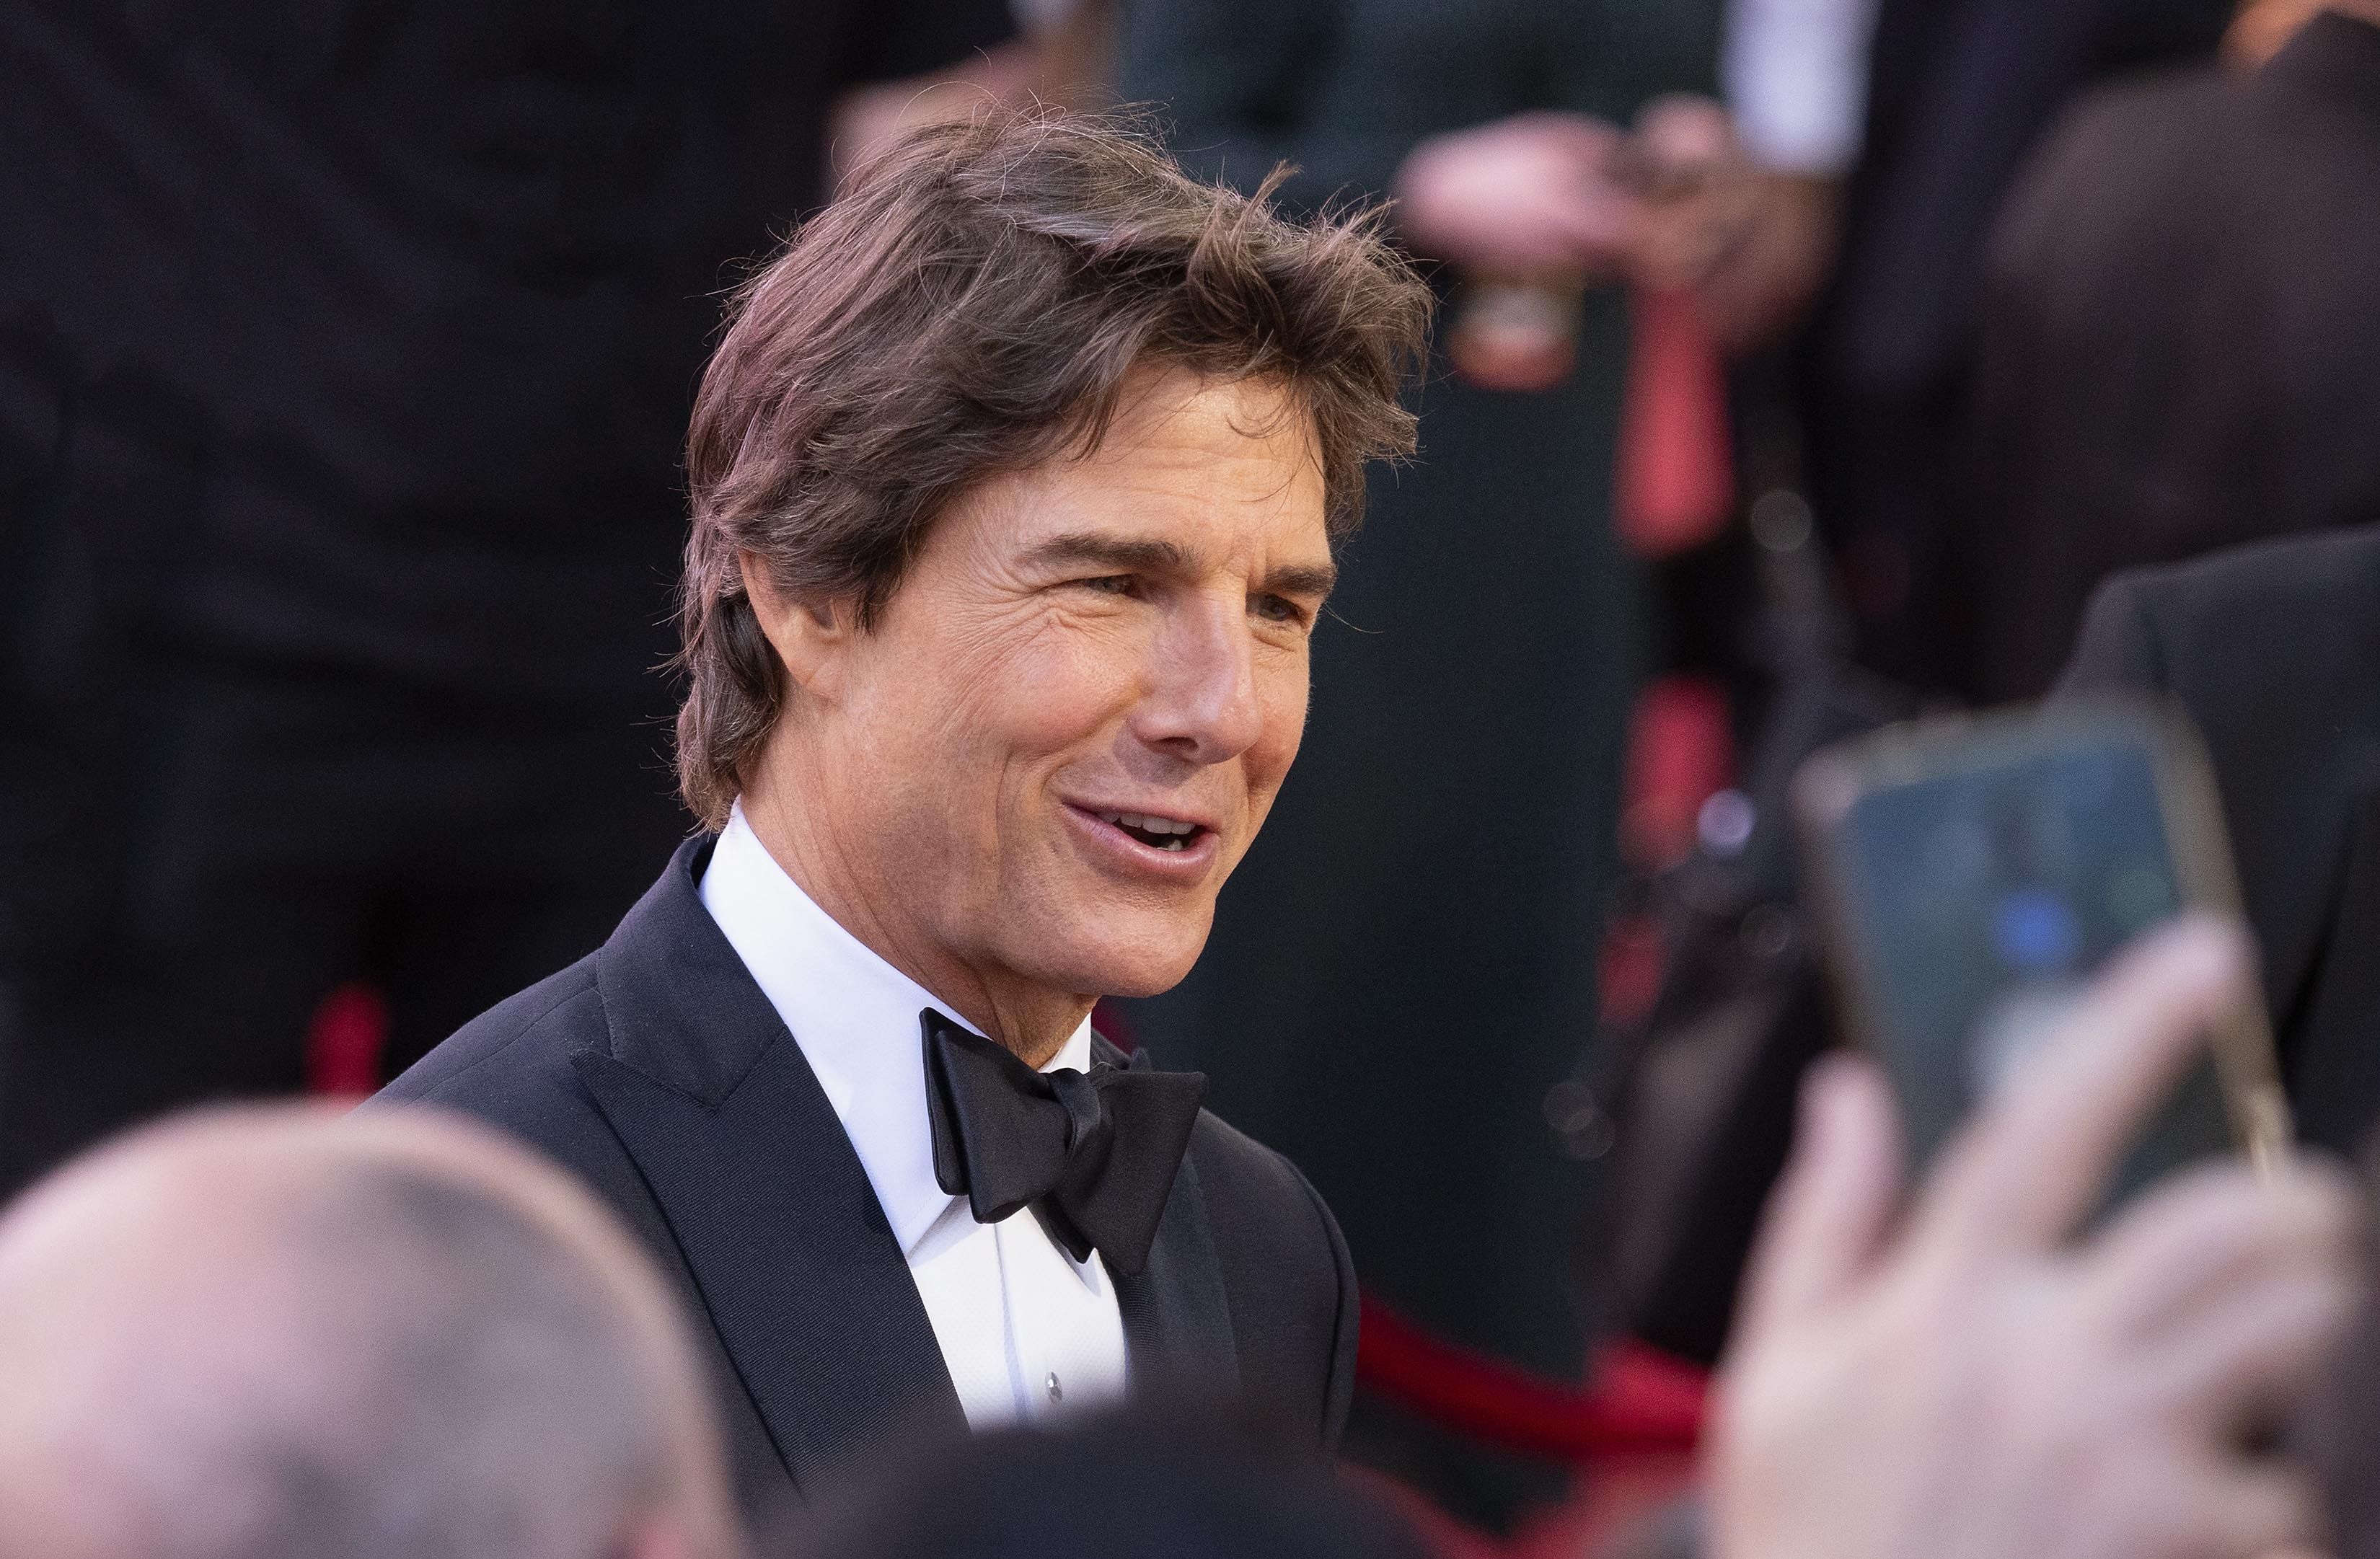 Tom Cruise recusou a liderança em uma franquia no valor de mais de US $ 2 bilhões porque não estava se alinhando criativamente